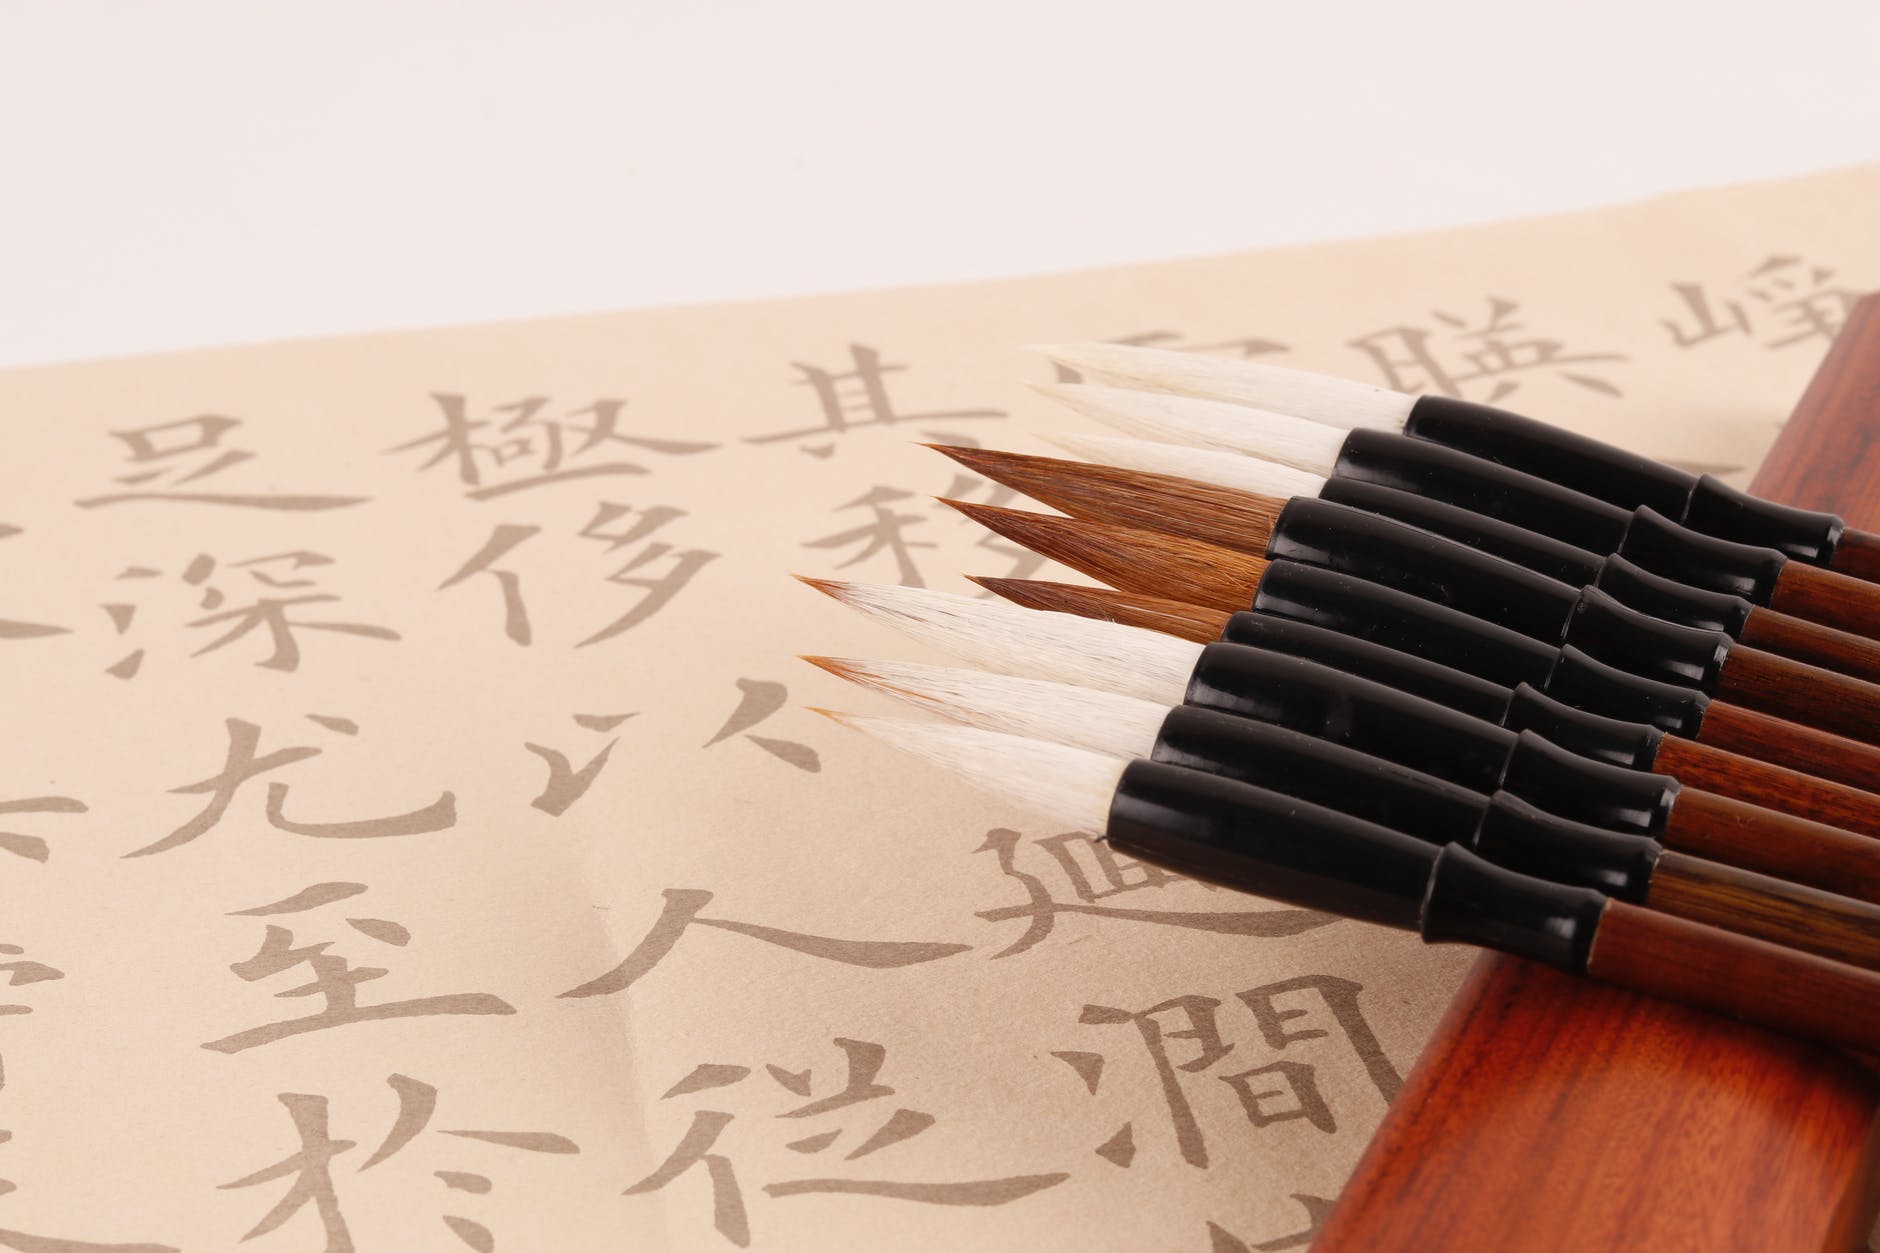 有關中國畫分類或工具的英文單詞對照   @ 香港畫室資訊網